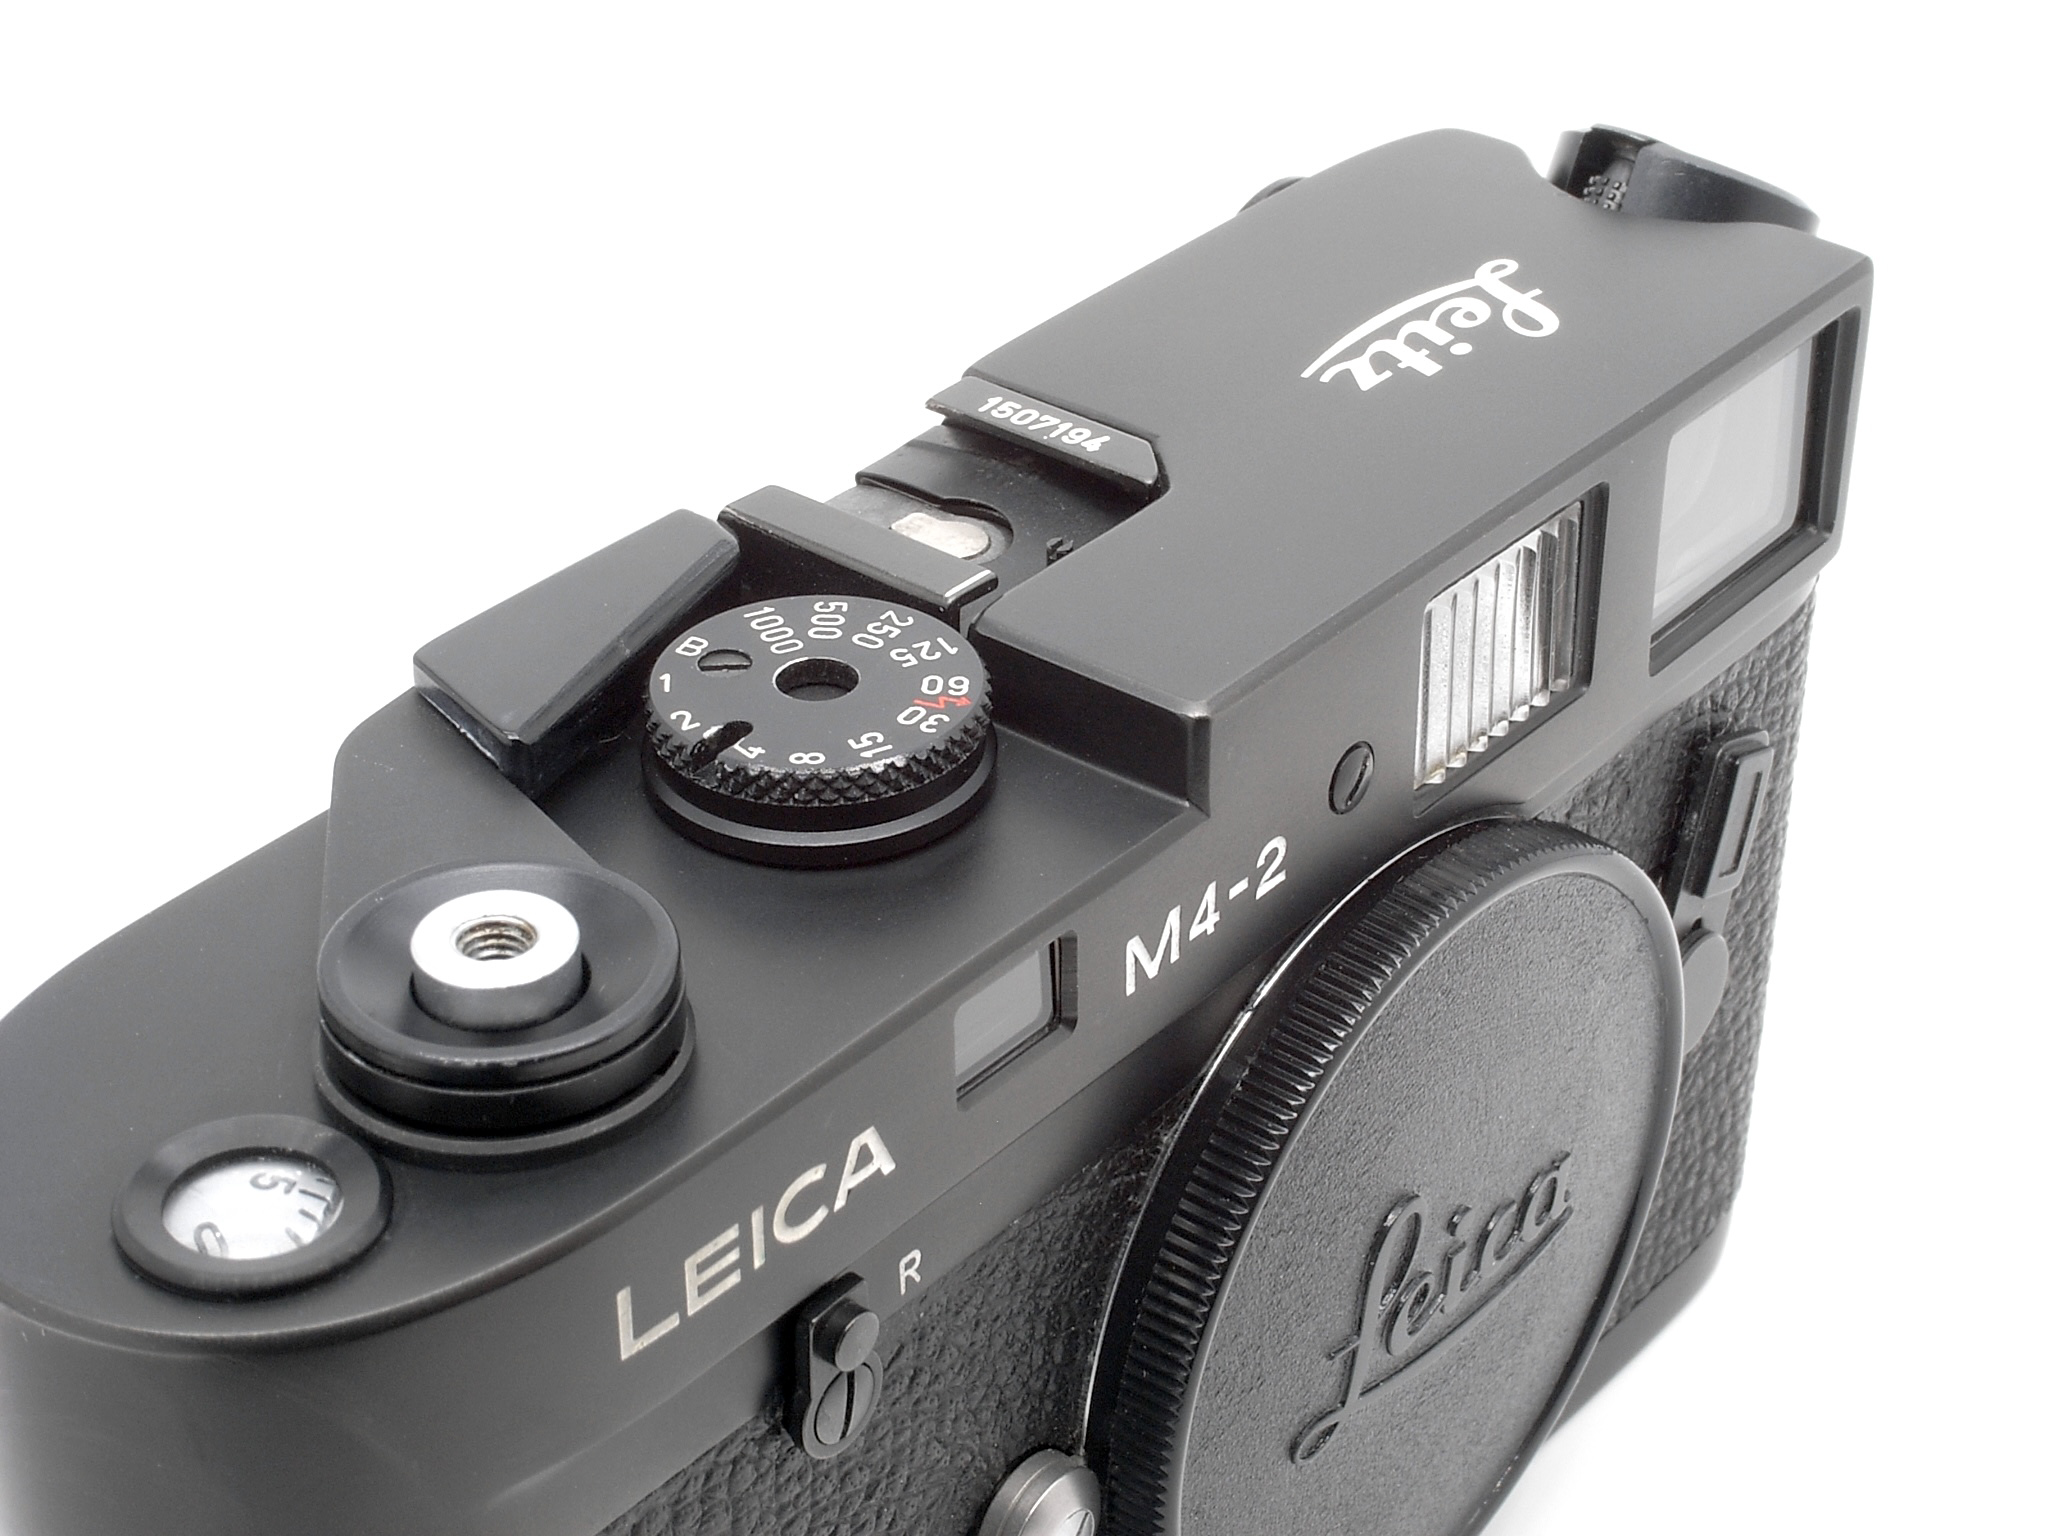 Leica M4-2 black chrome